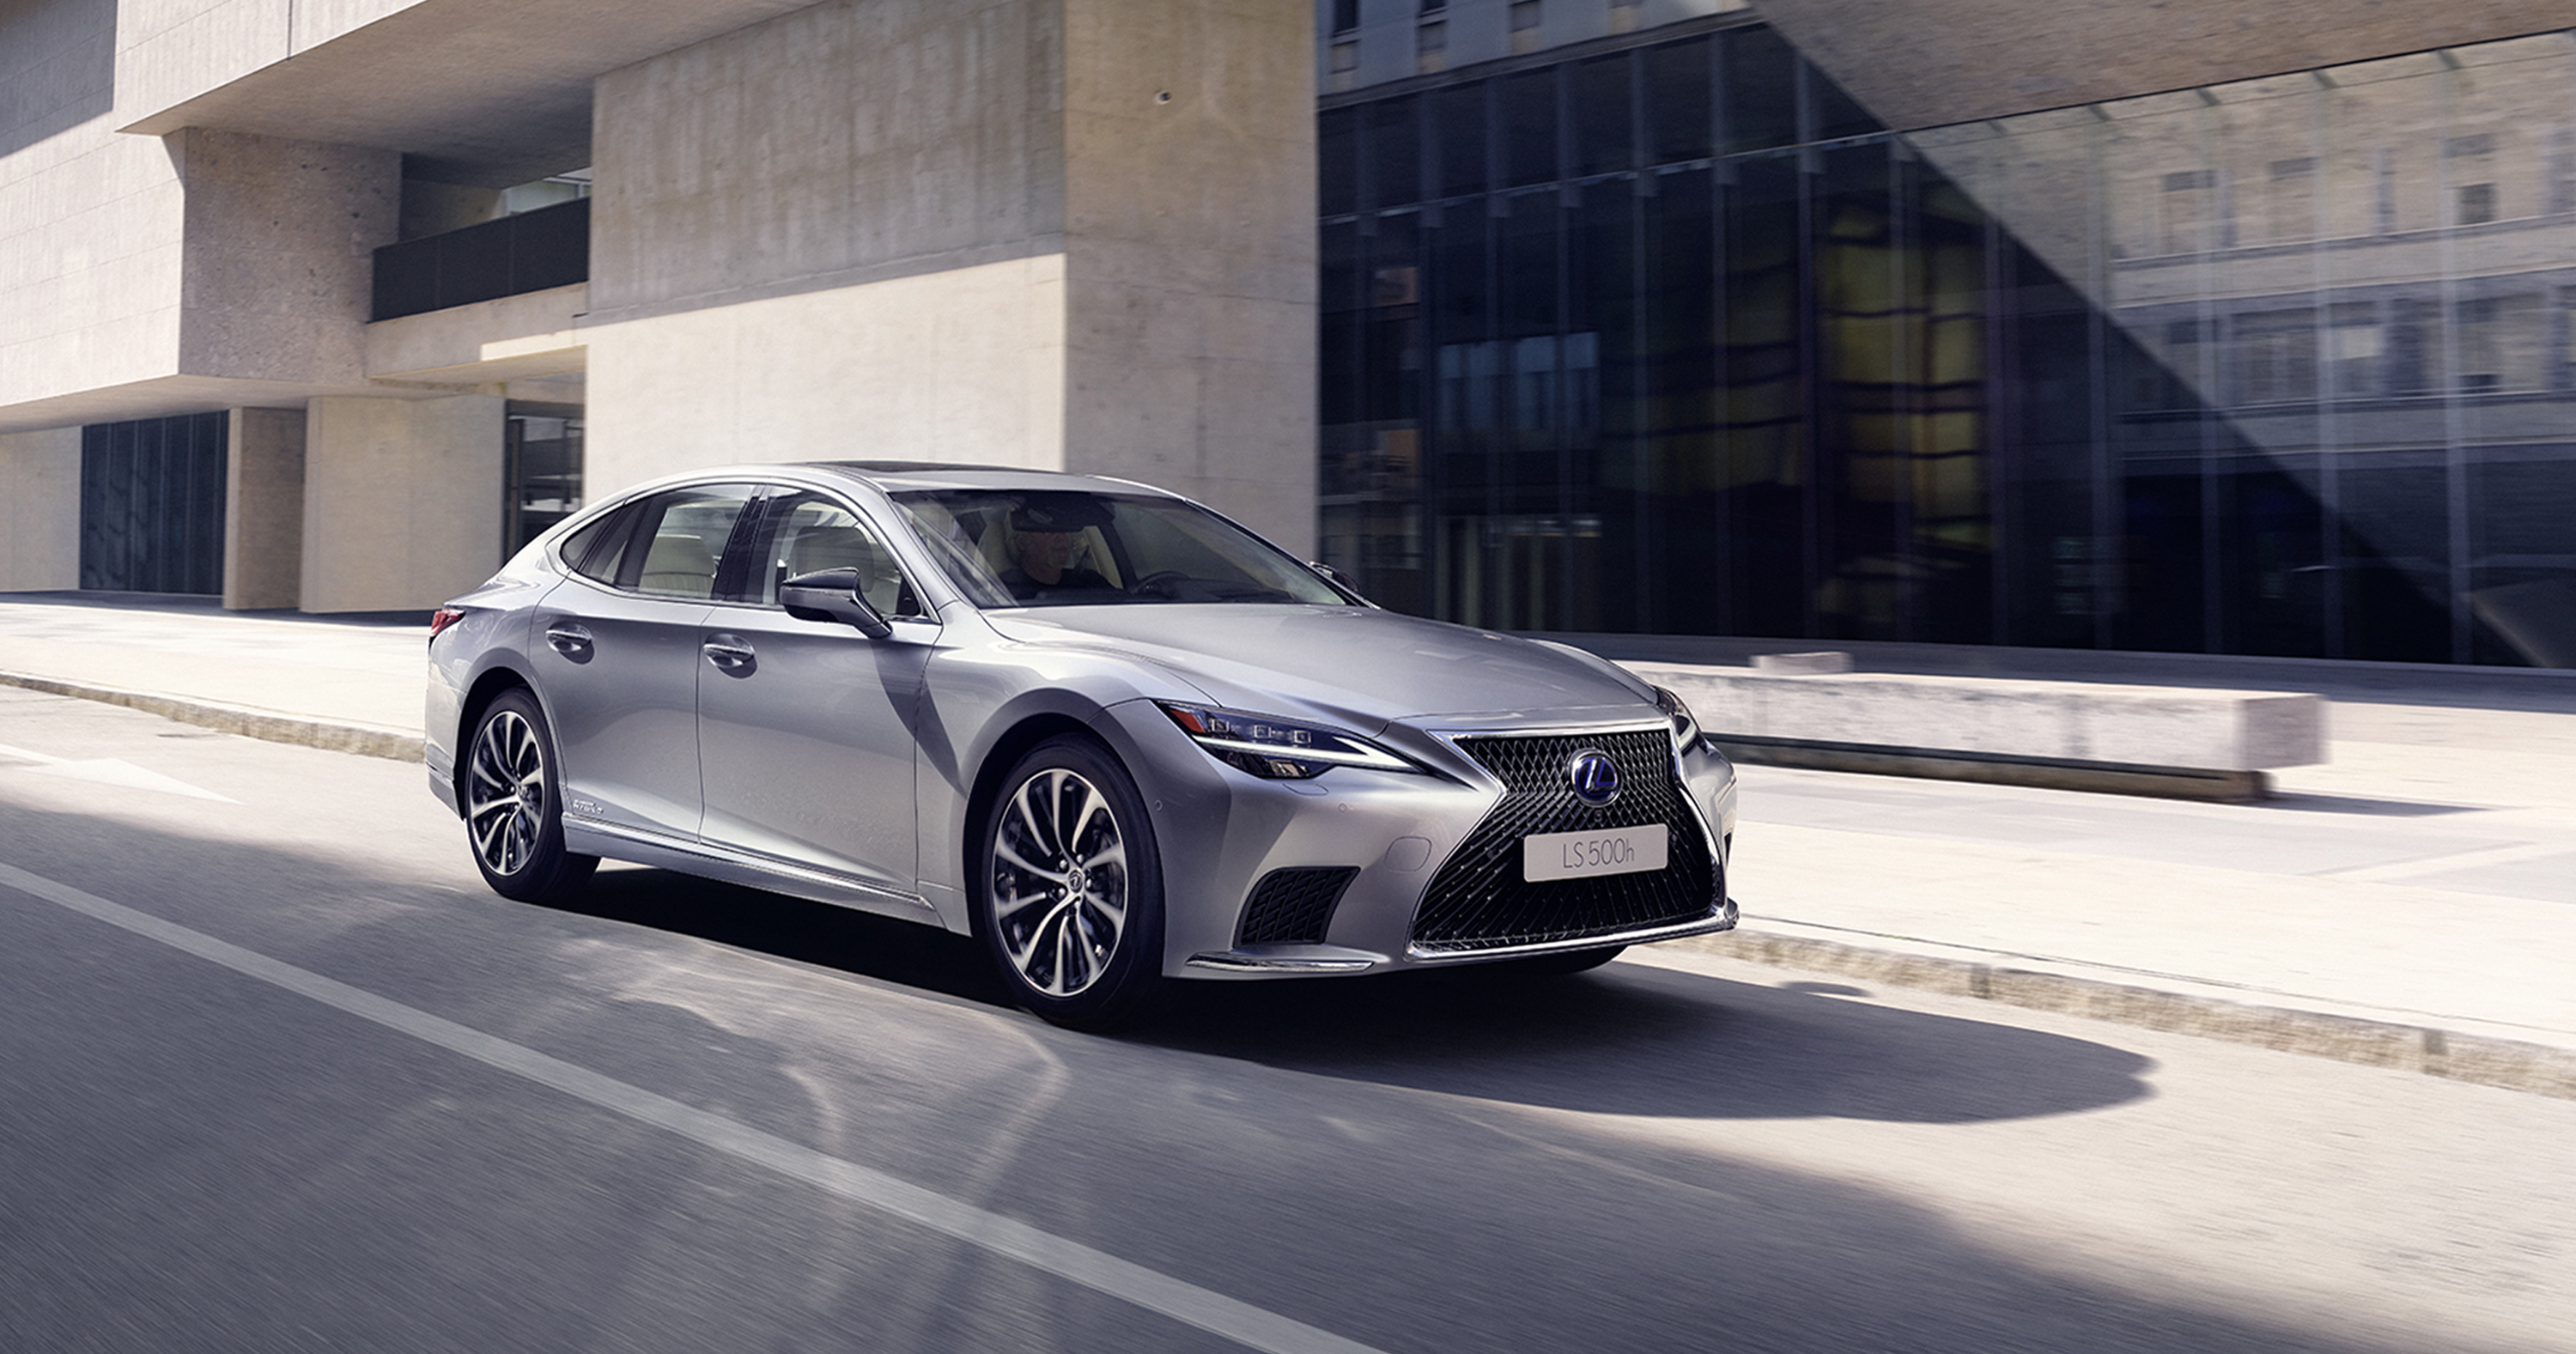 Galería: El nuevo Lexus LS 500h mejora el rendimiento eléctrico de su motor en un 30%